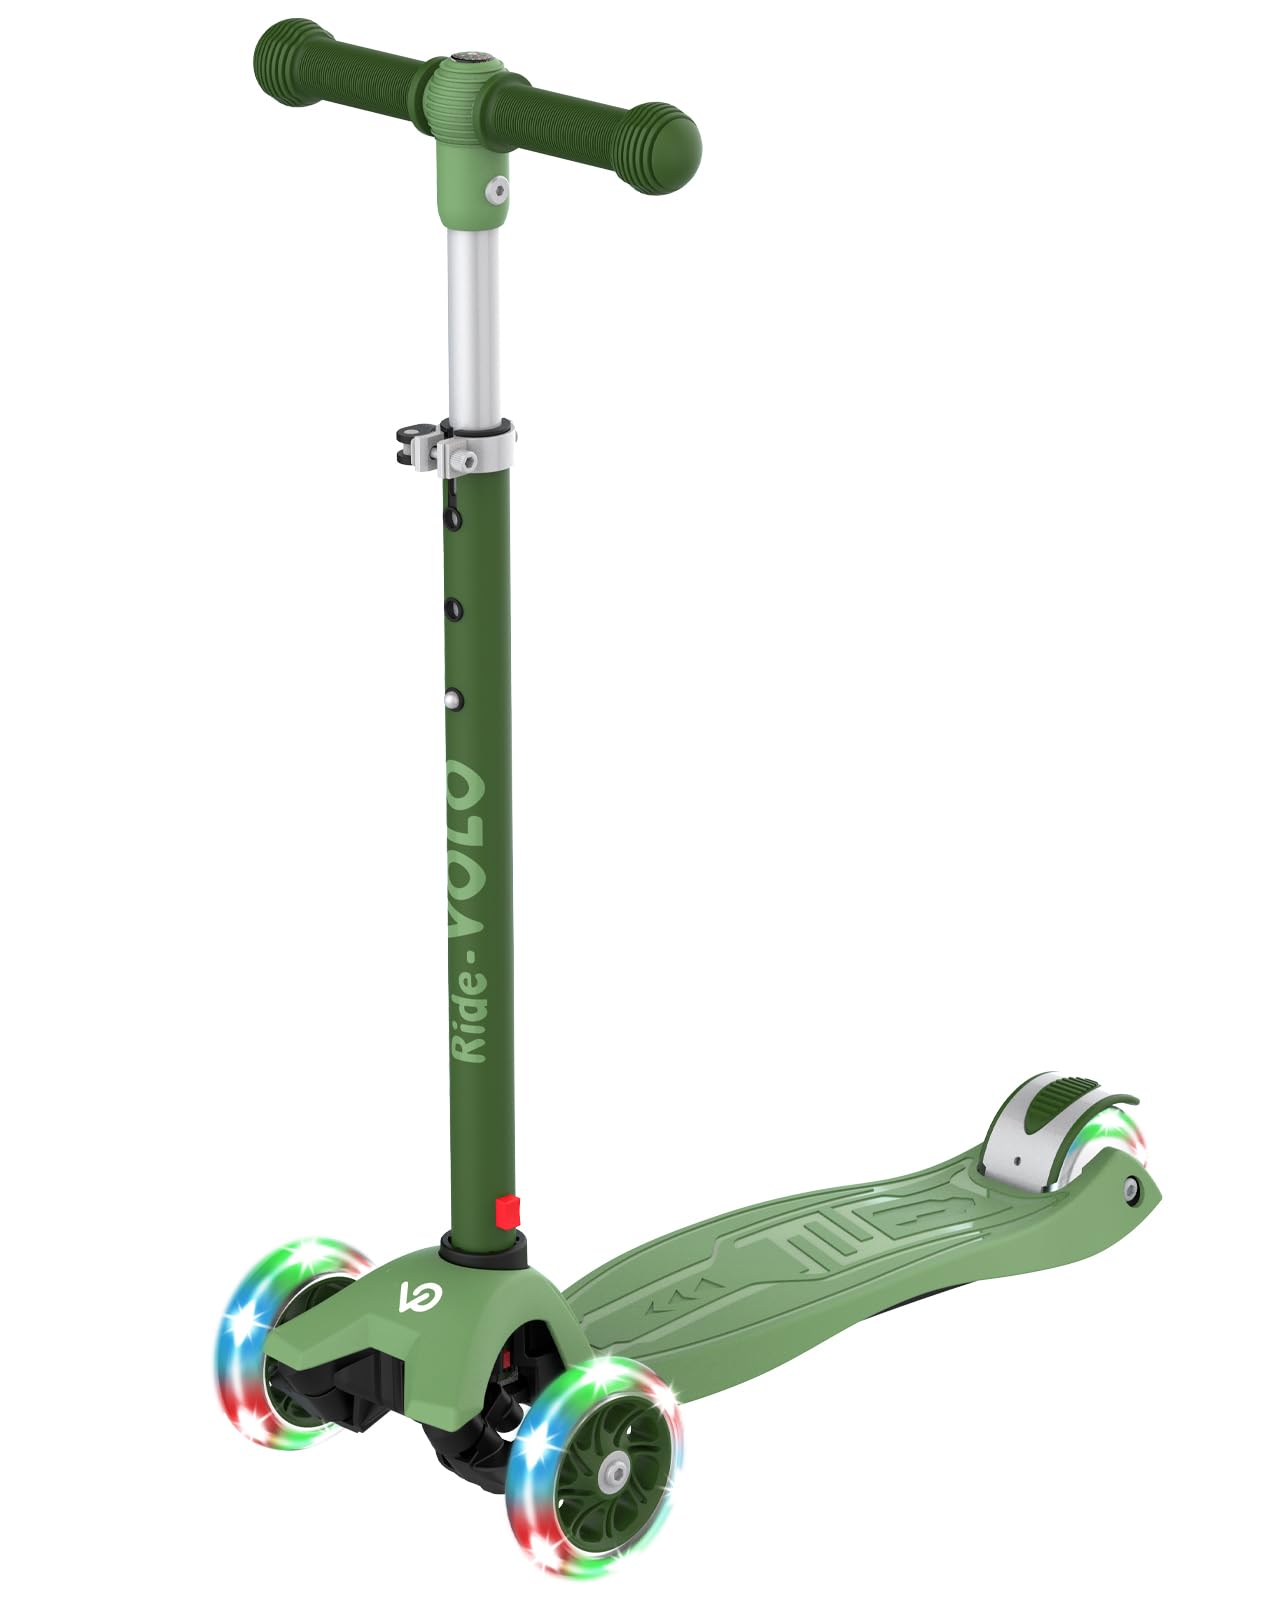 RideVOLO キックスクーター 子供向けキックボード キックスケーター 女の子 三輪車 三段階高さ調整 光るLEDタイヤ 耐荷重50kg アウトドアに適用 おもちゃ 安定 深い緑